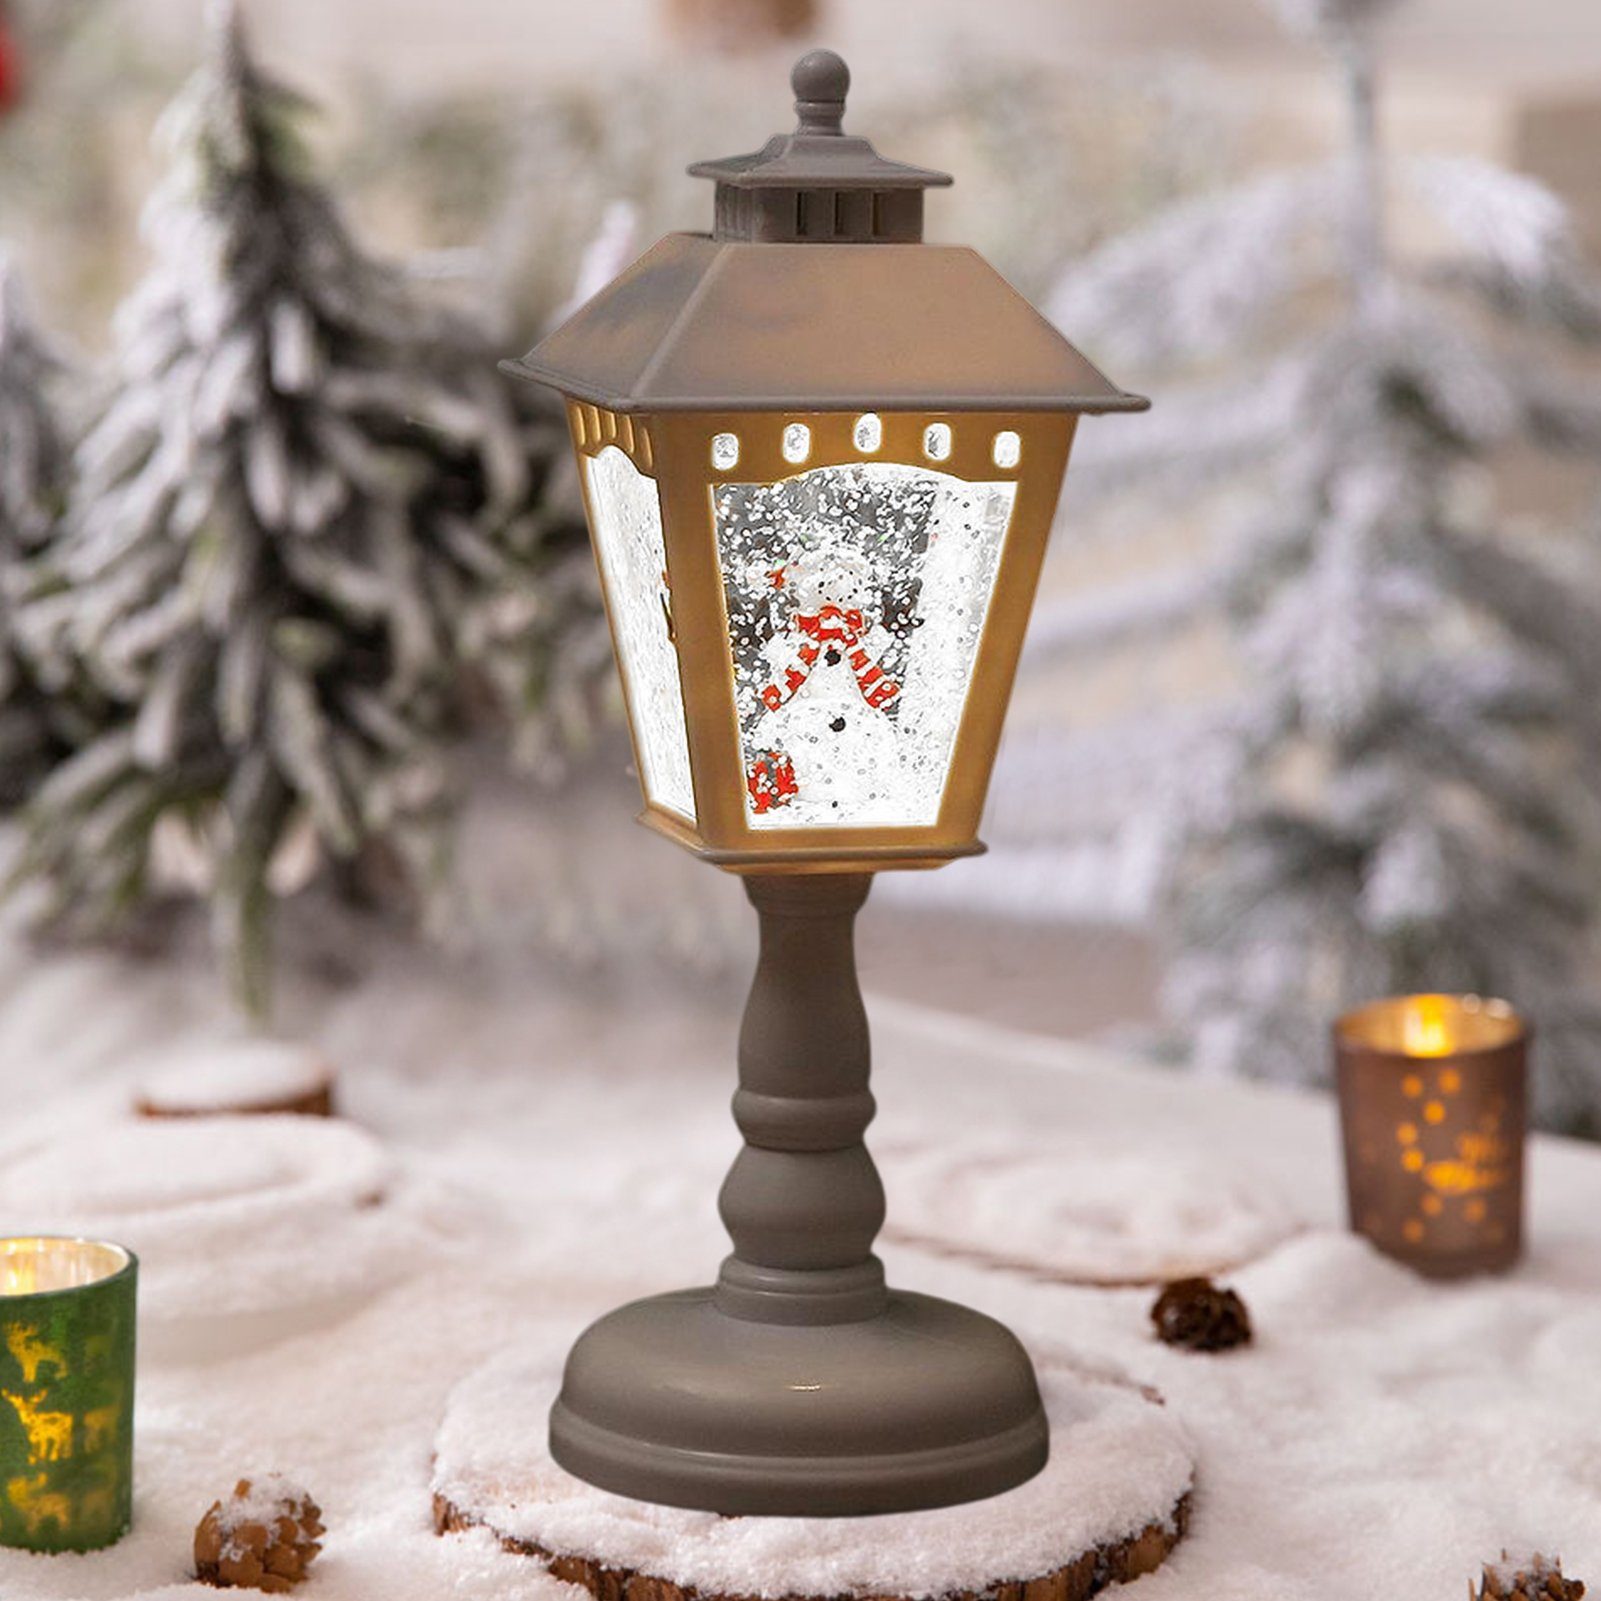 Rutaqian Weihnachtslaterne LED Schreibtischlampe Leuchte Rot Weihnachtsdeko, LED Lampe wechselbar Dekoration